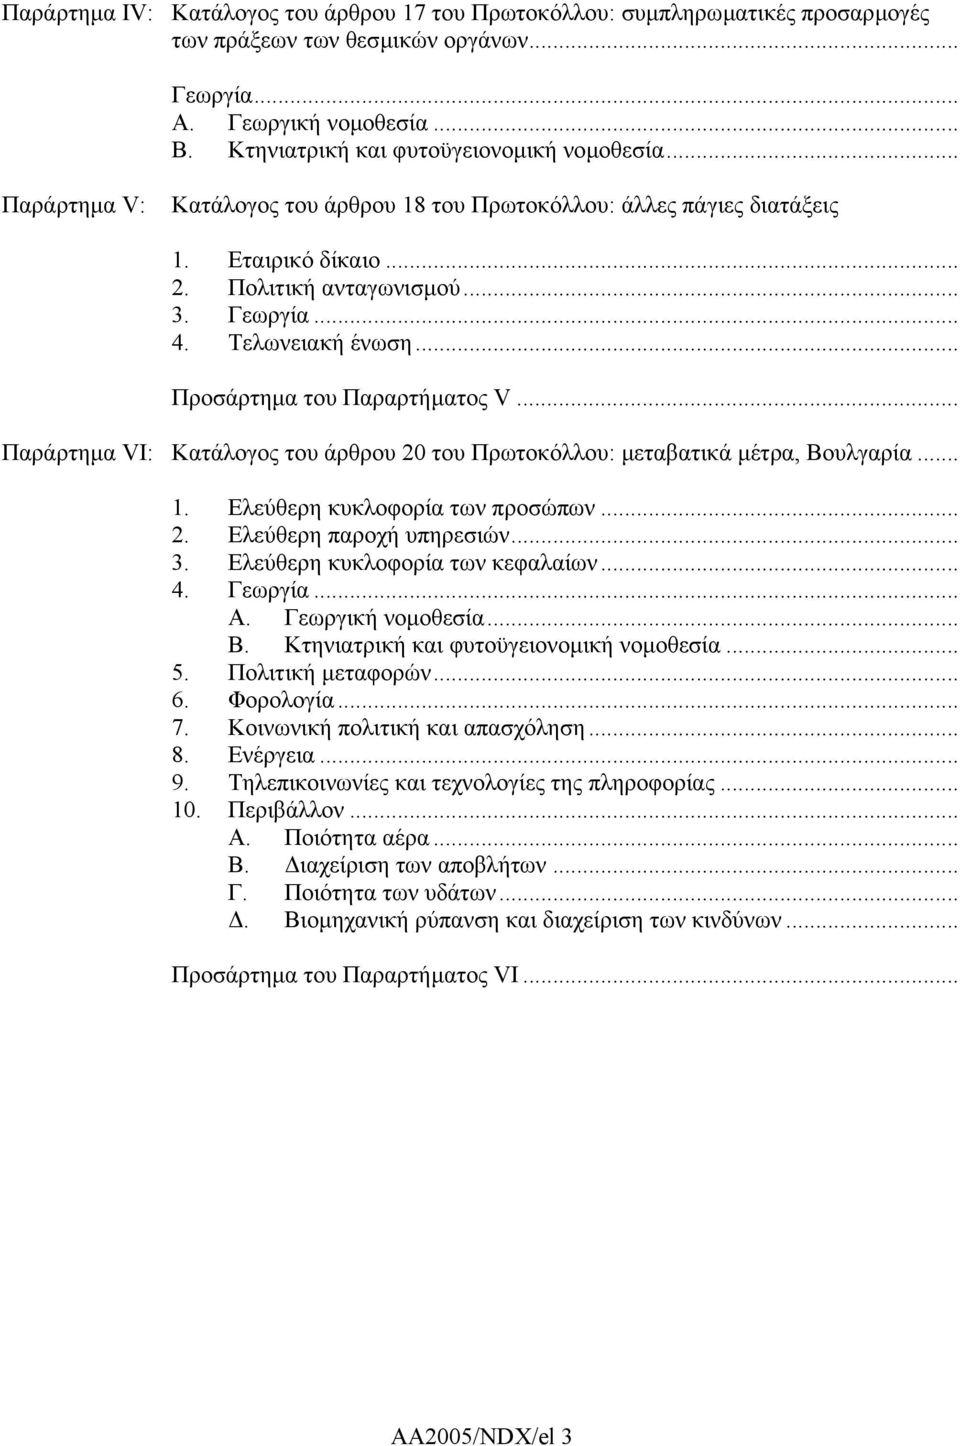 .. Παράρτηµα VI: Κατάλογος του άρθρου 20 του Πρωτοκόλλου: µεταβατικά µέτρα, Βουλγαρία... 1. Ελεύθερη κυκλοφορία των προσώπων... 2. Ελεύθερη παροχή υπηρεσιών... 3. Ελεύθερη κυκλοφορία των κεφαλαίων... 4.